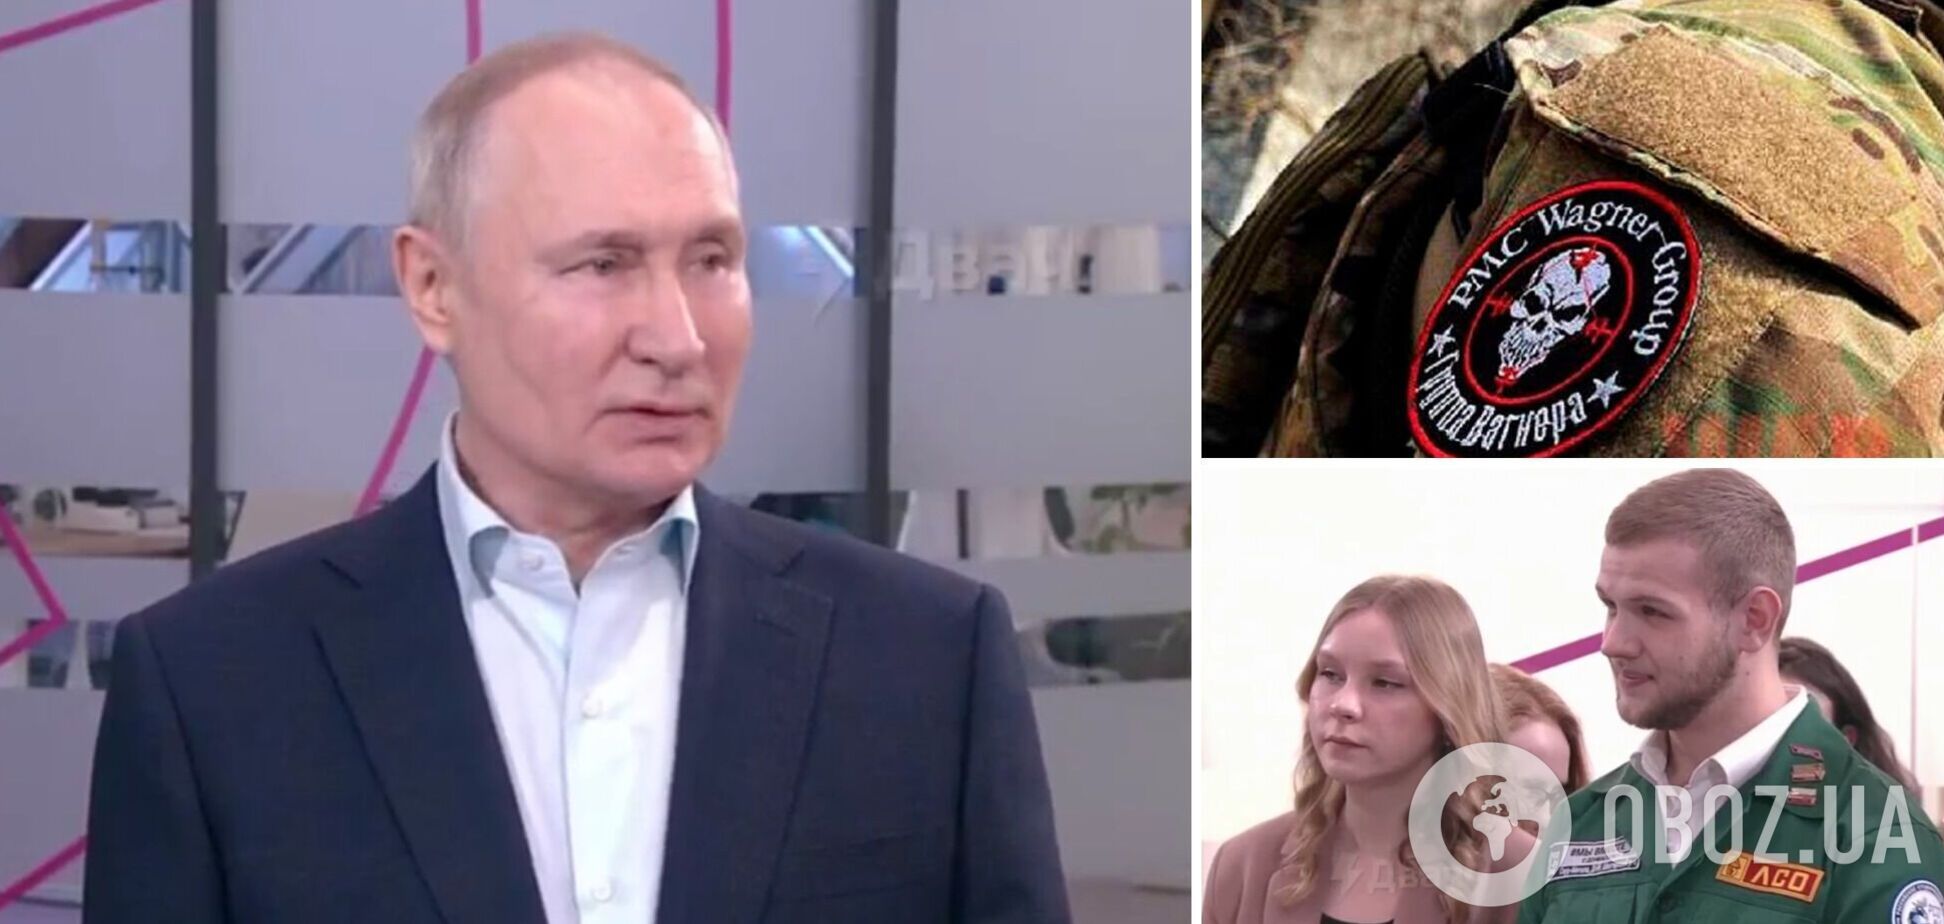 Перепутал с ЧВК 'Вагнер'? Путин придумал страшилку о 'заградотрядах' в ВСУ, его высмеяли. Видео